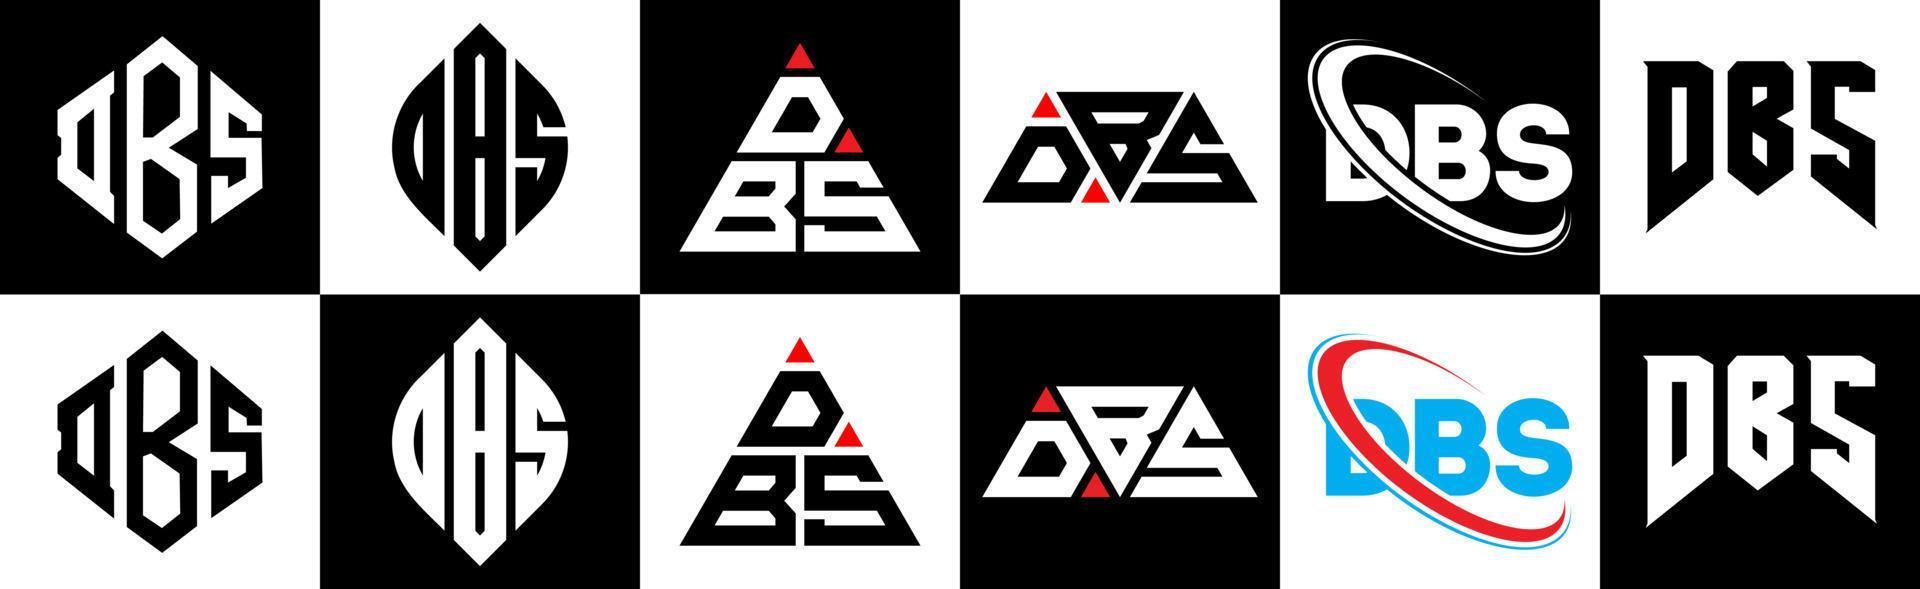 design de logotipo de letra dbs em estilo seis. dbs polígono, círculo, triângulo, hexágono, estilo plano e simples com logotipo de letra de variação de cor preto e branco definido em uma prancheta. dbs logotipo minimalista e clássico vetor